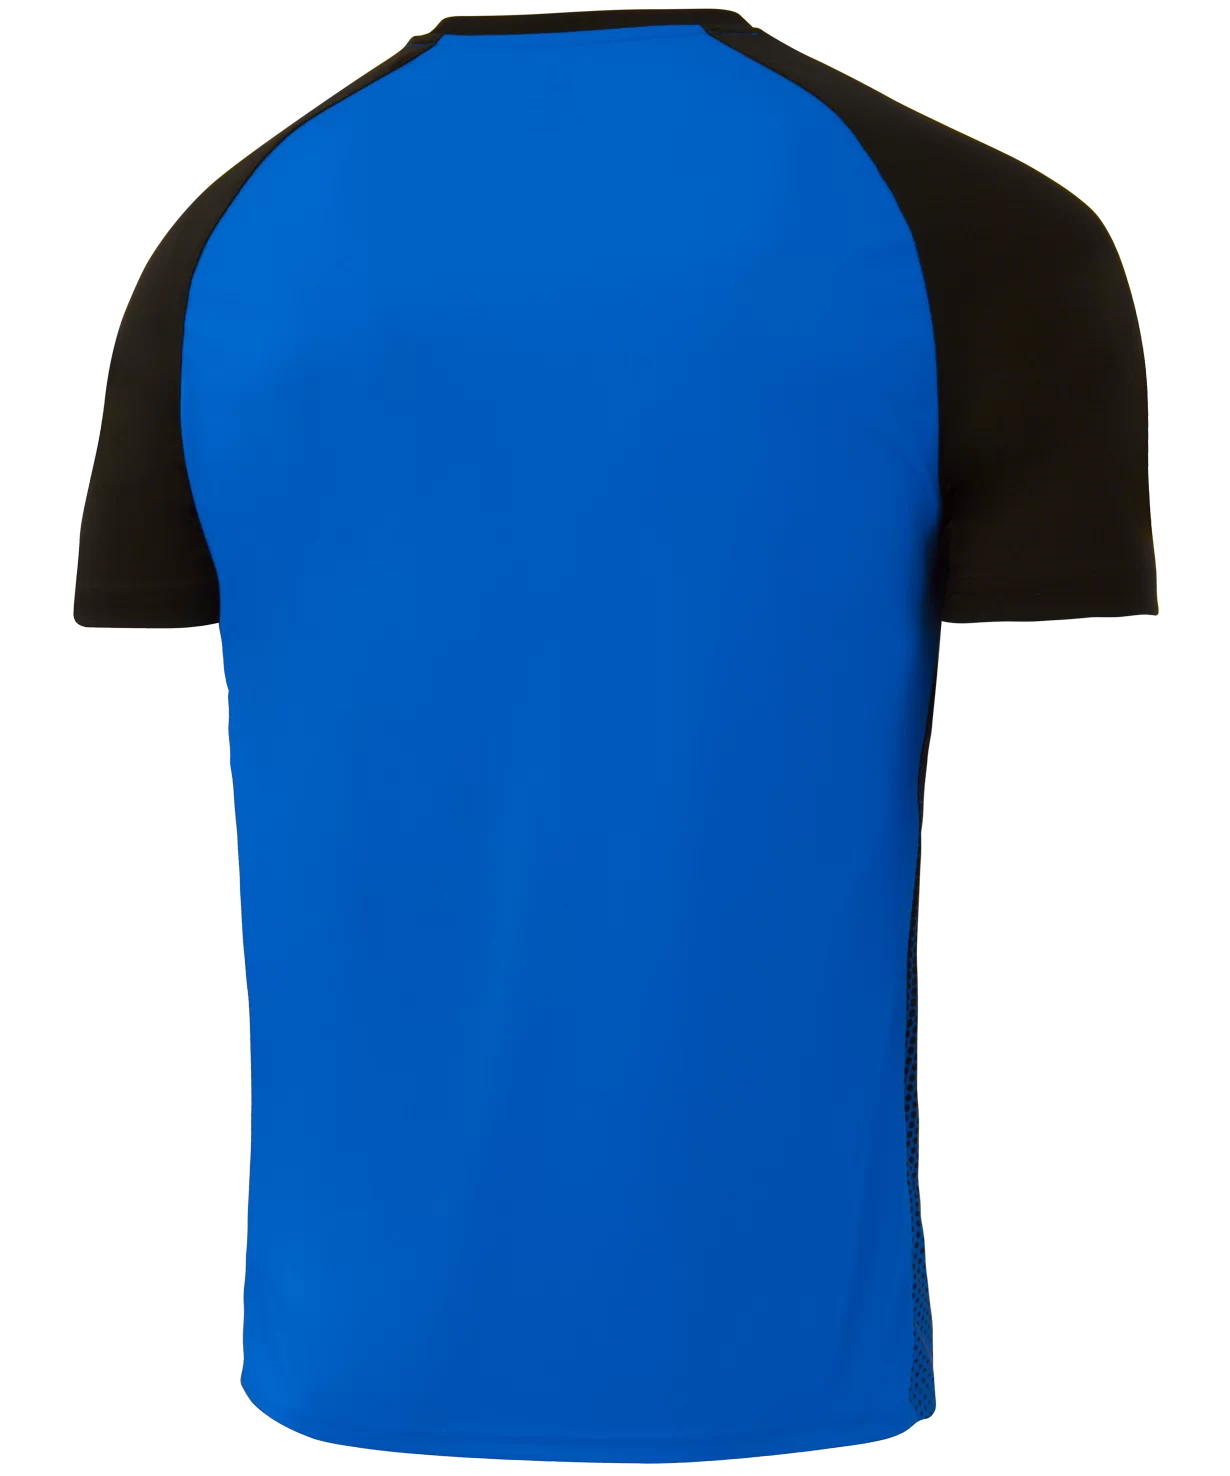 Реальное фото Футболка игровая Camp Striped Jersey, синий/черный, детский Jögel от магазина Спортев